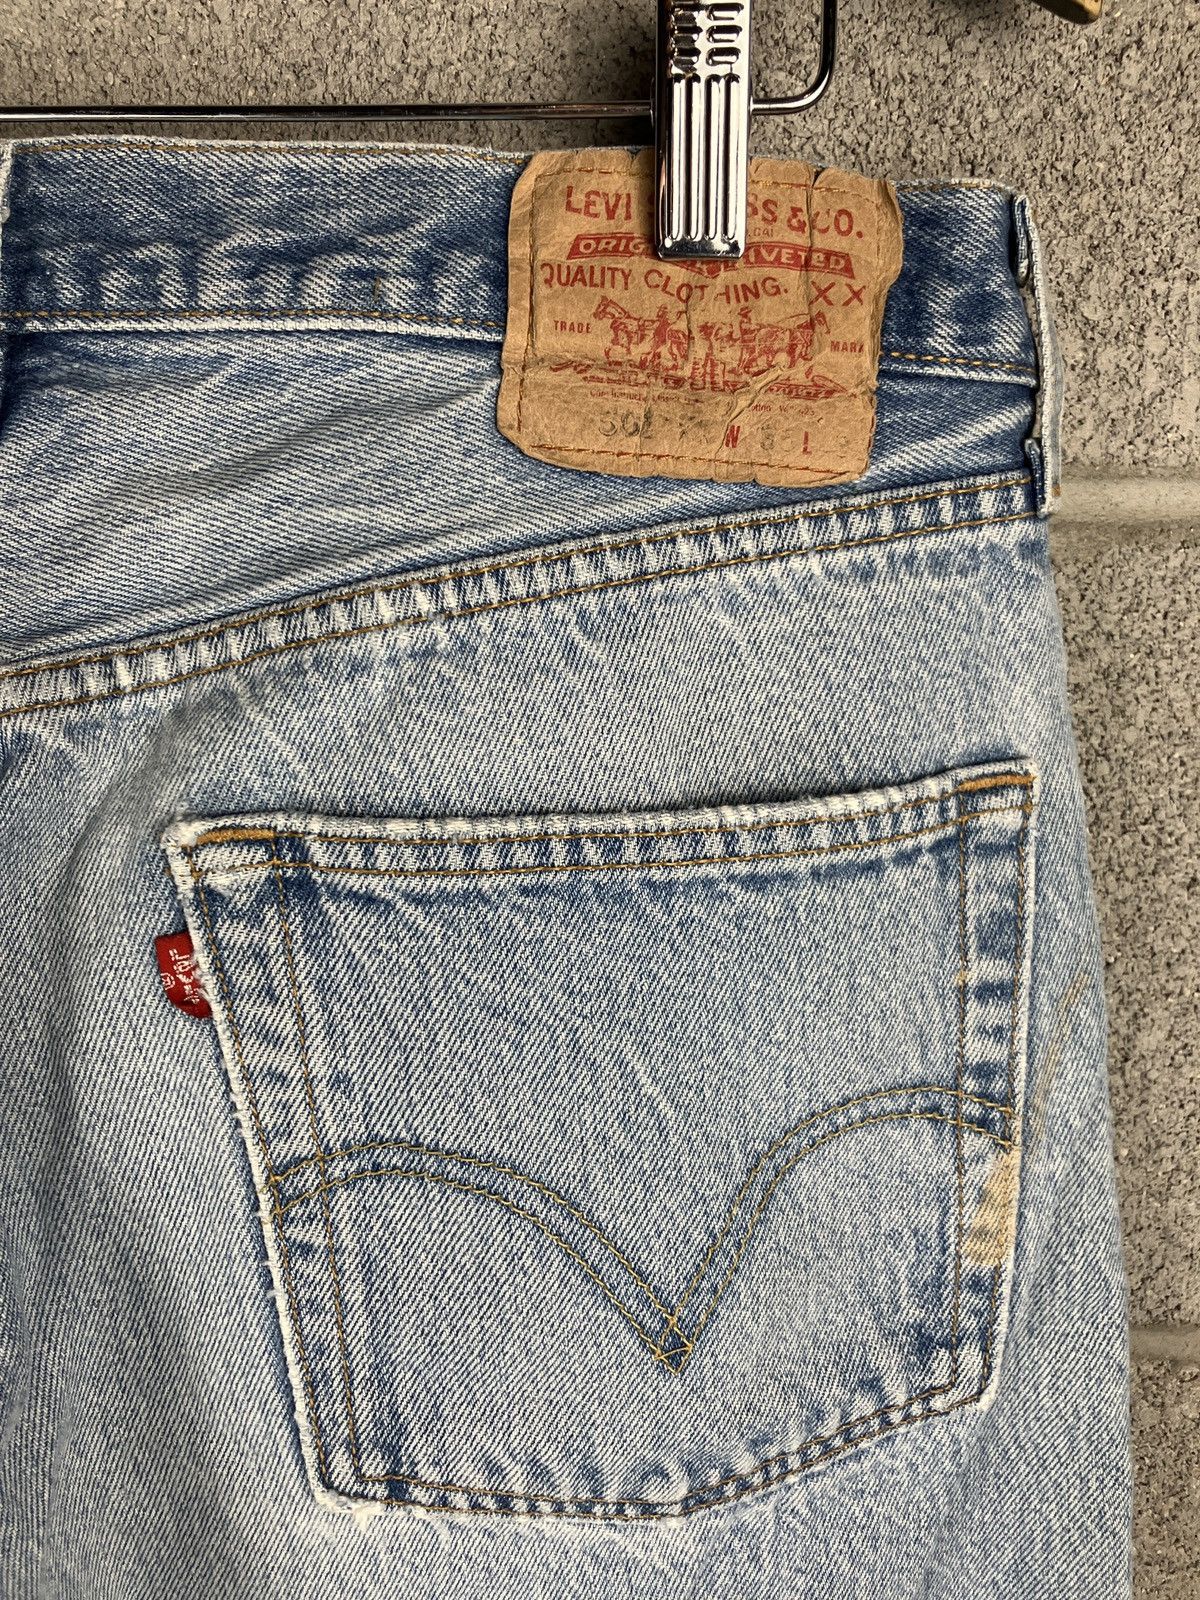 Vintage Vintage Levi’s 501 Distressed Painted Jeans 33 x 29 Size US 33 - 10 Thumbnail